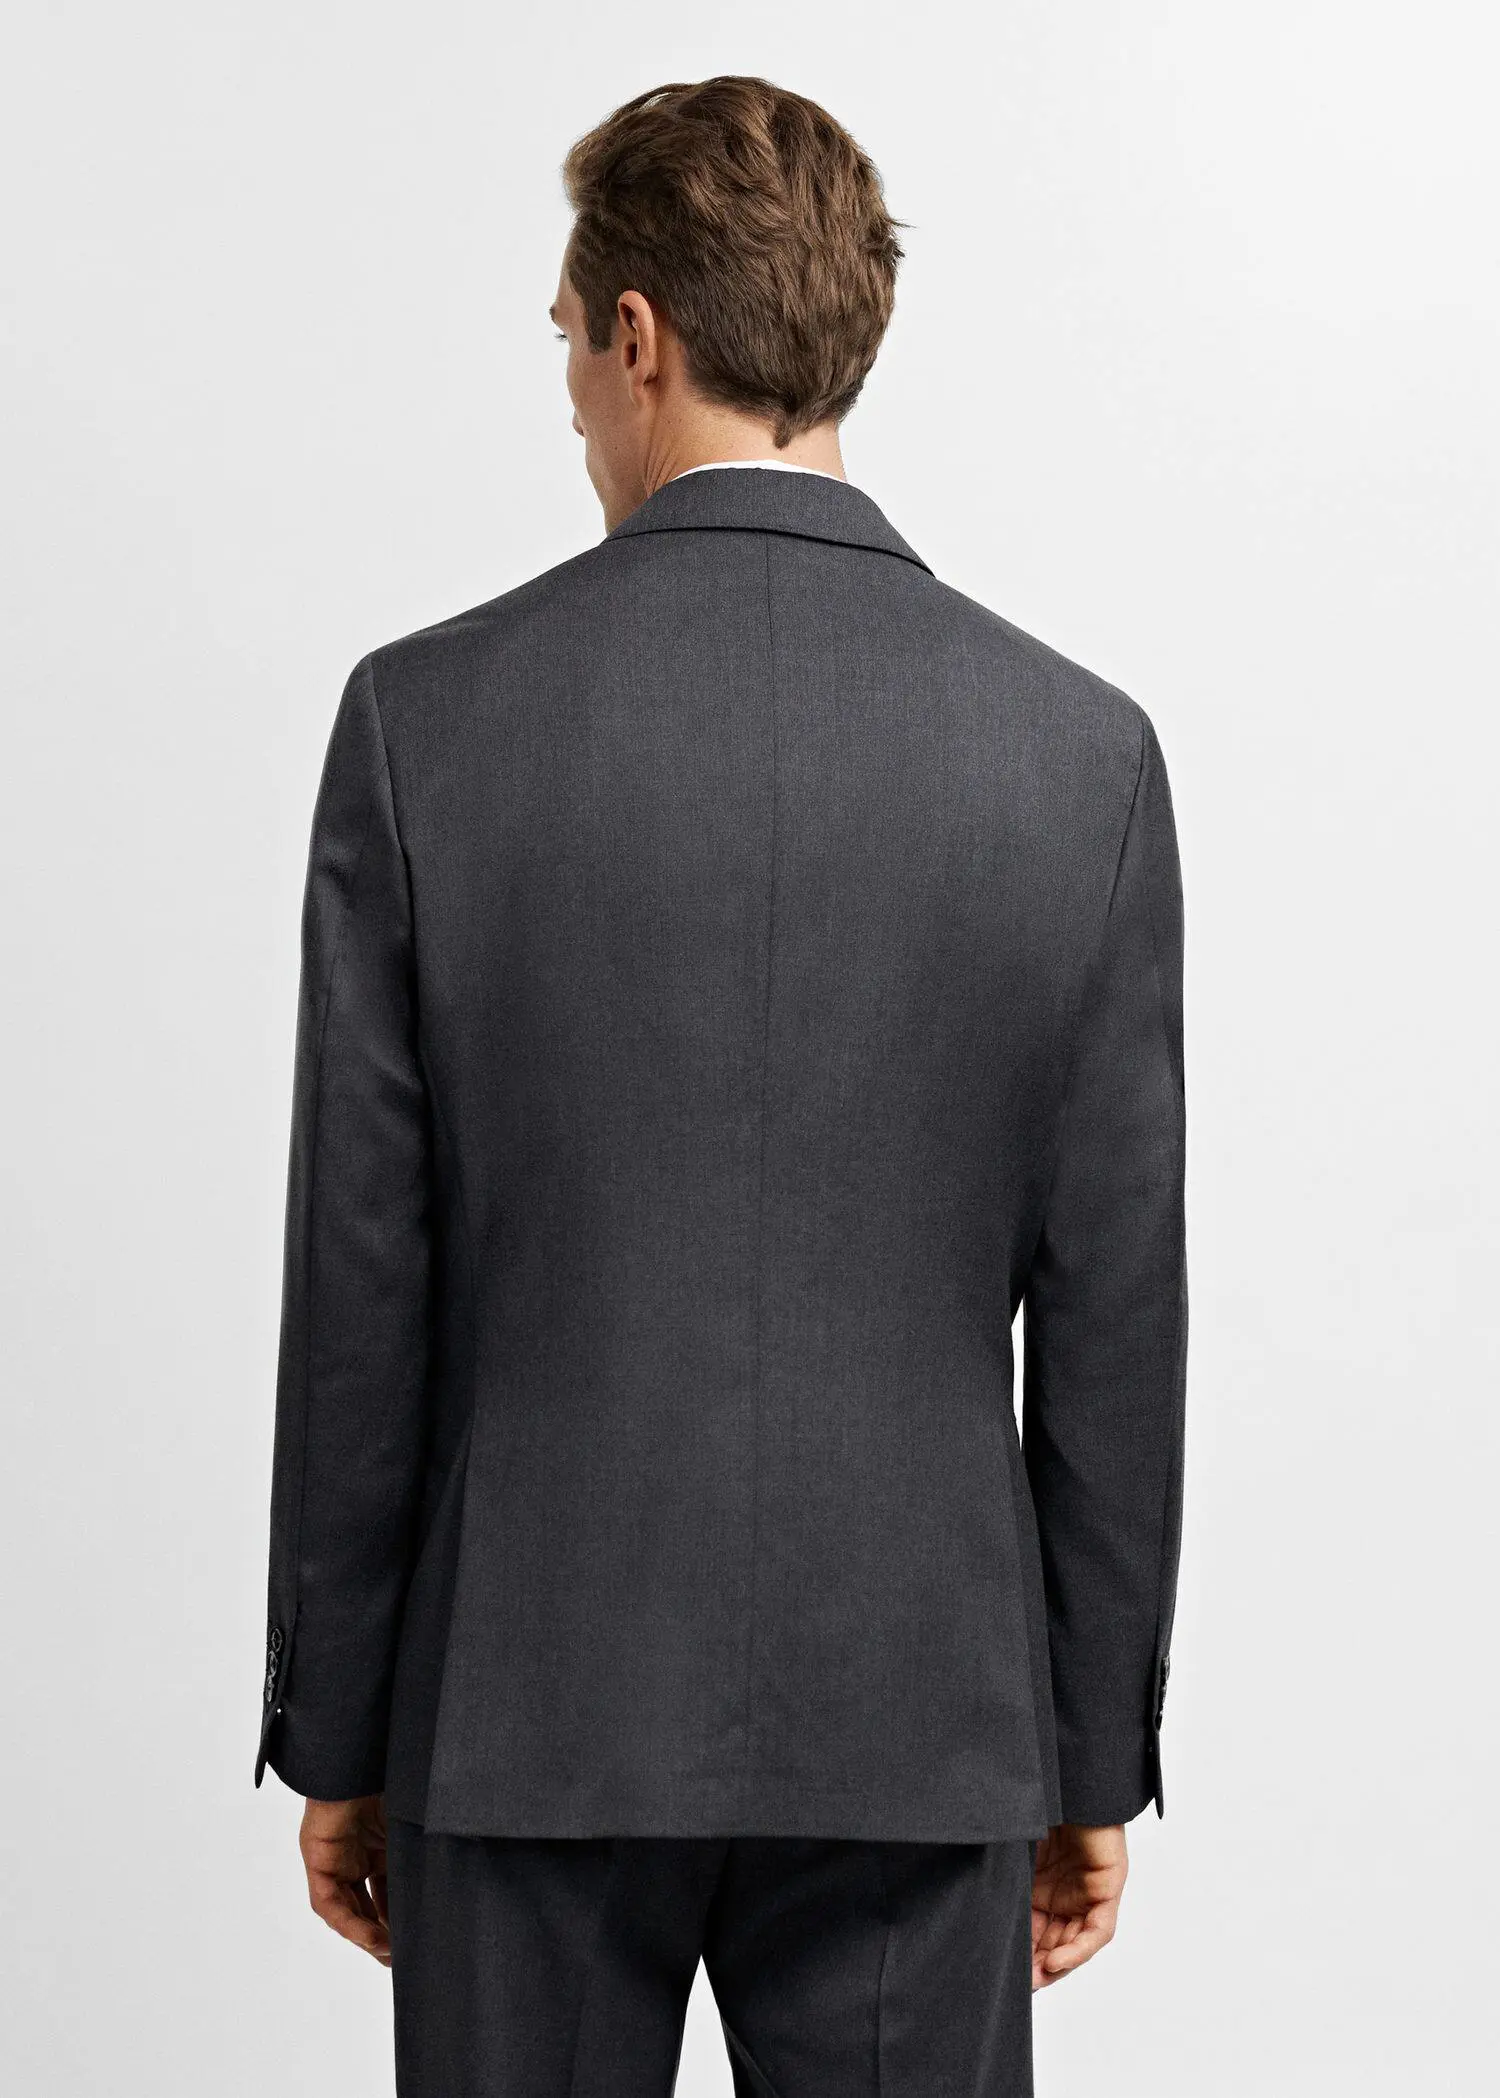 Mango 100% virgin wool suit jacket. 3